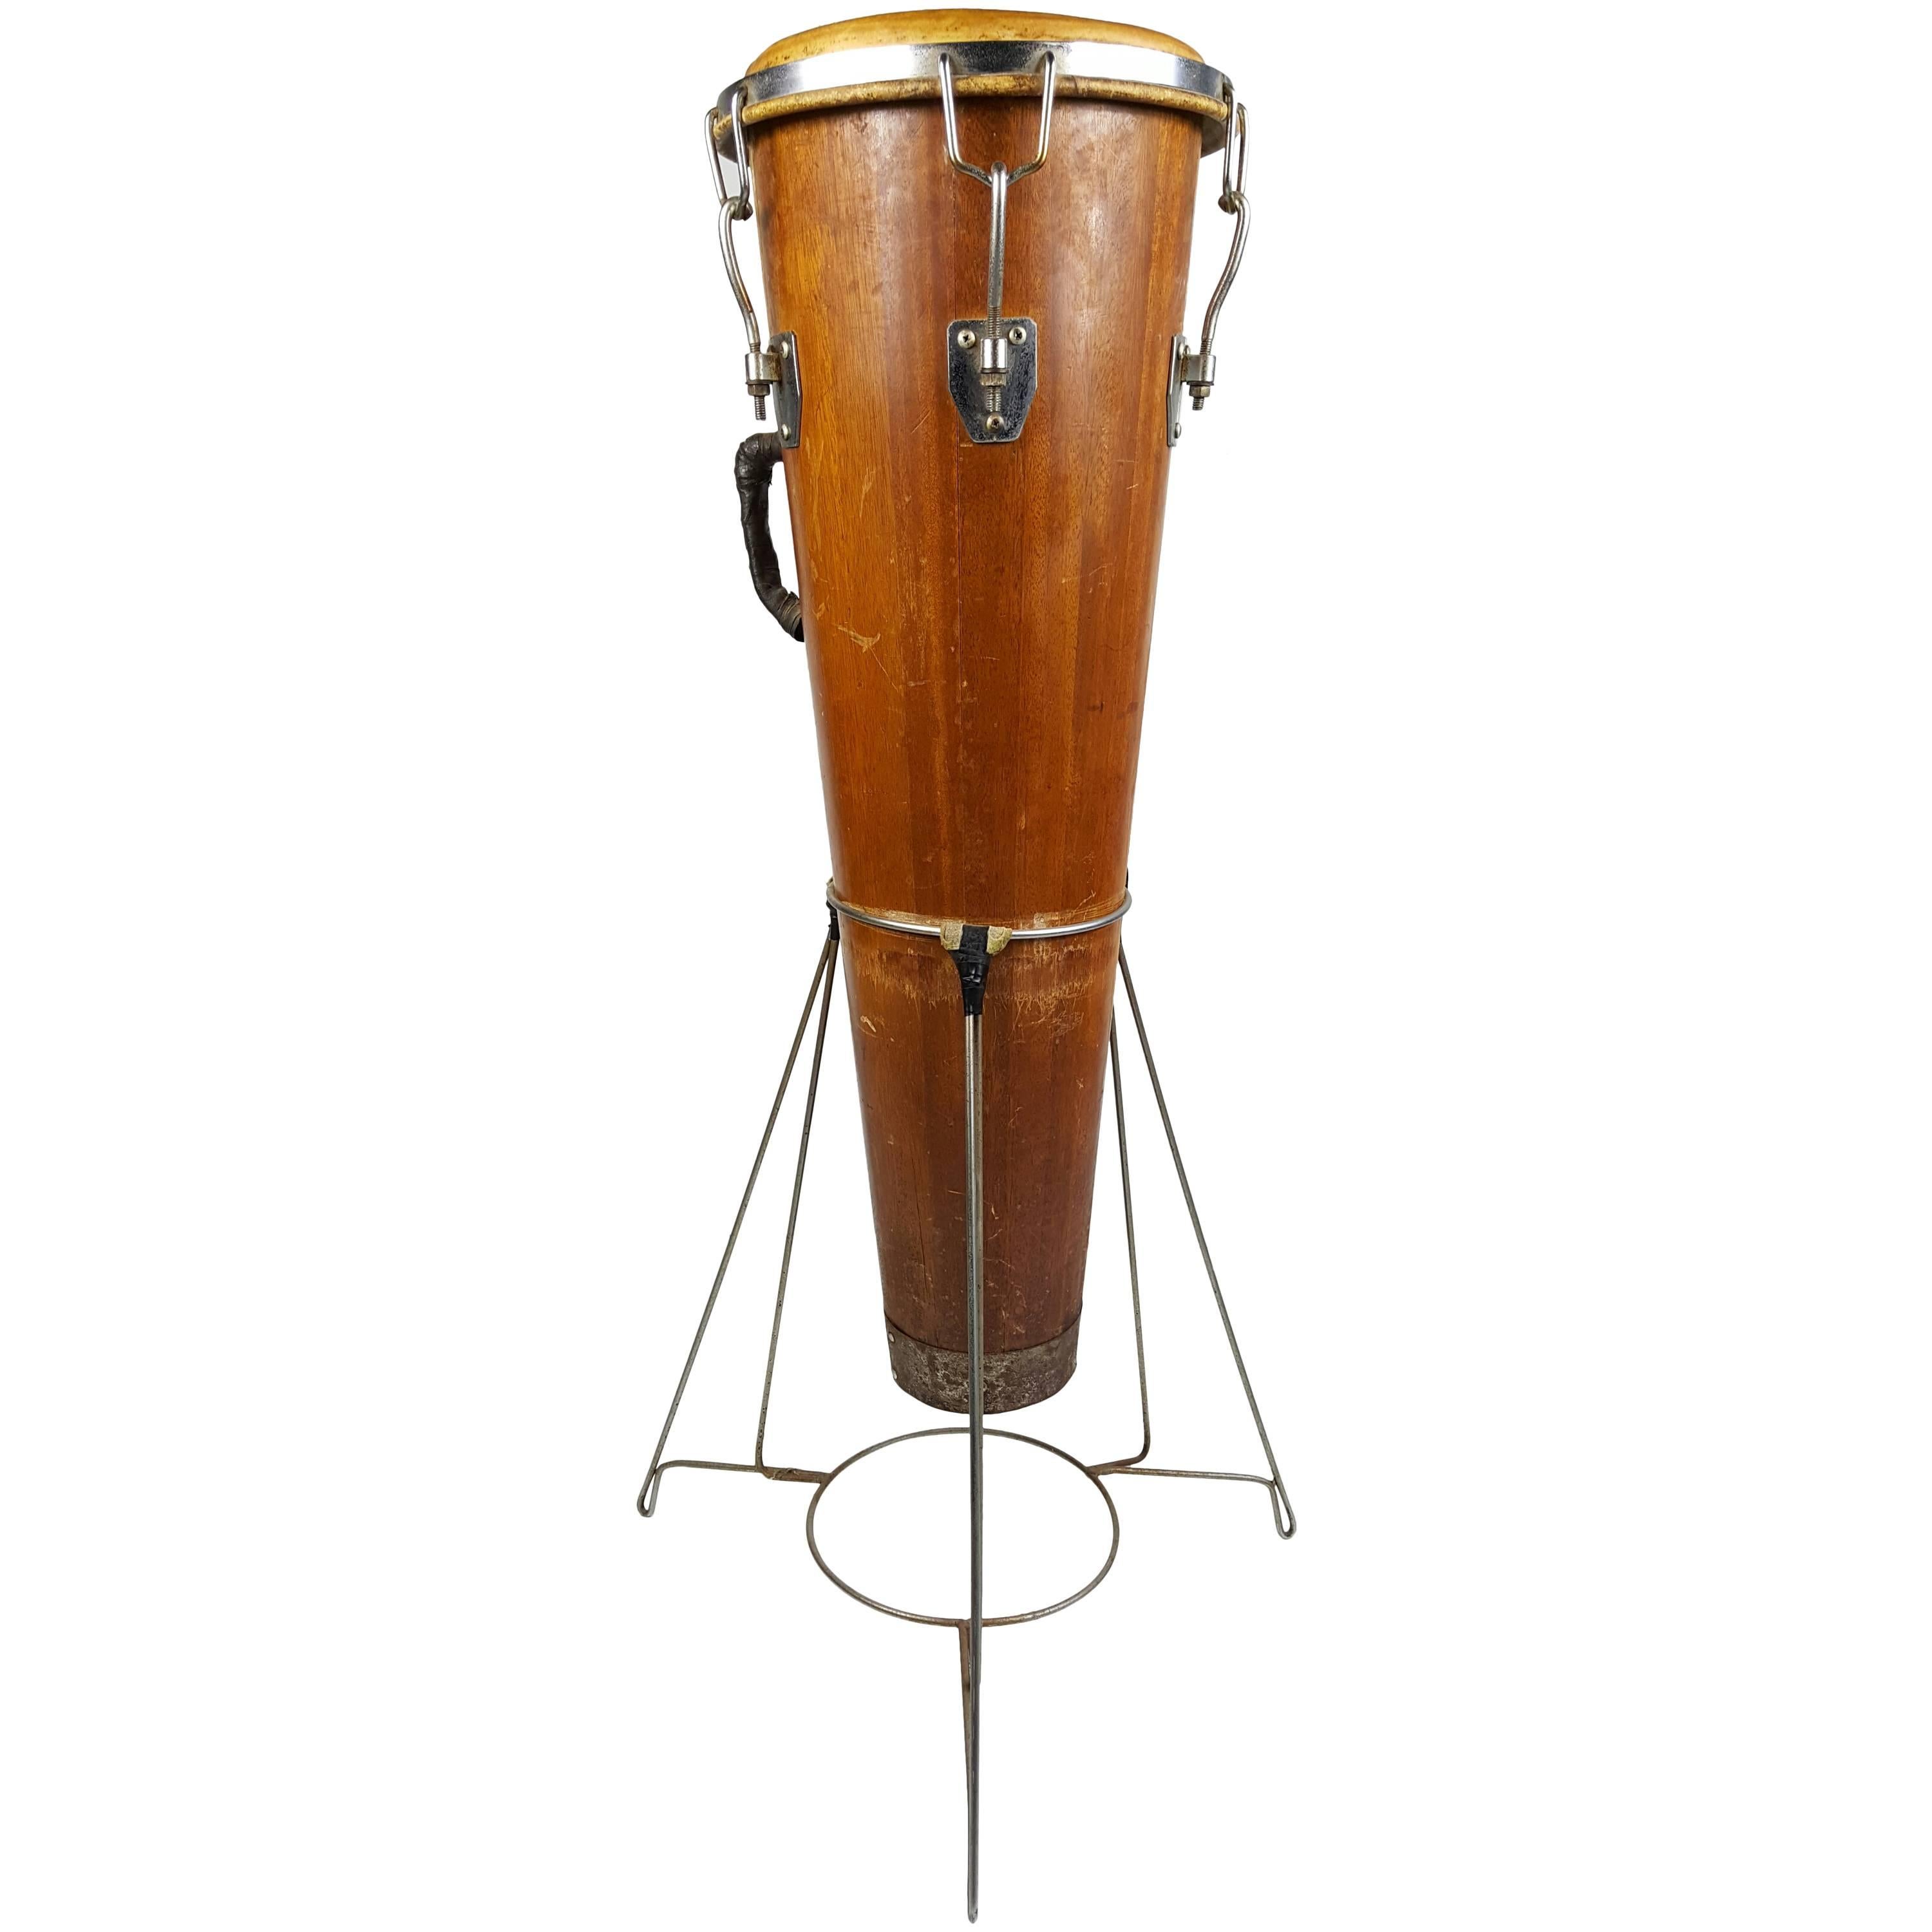 Rare Antique Gon Bop Conga Drum with Original Stand, Modernist Design